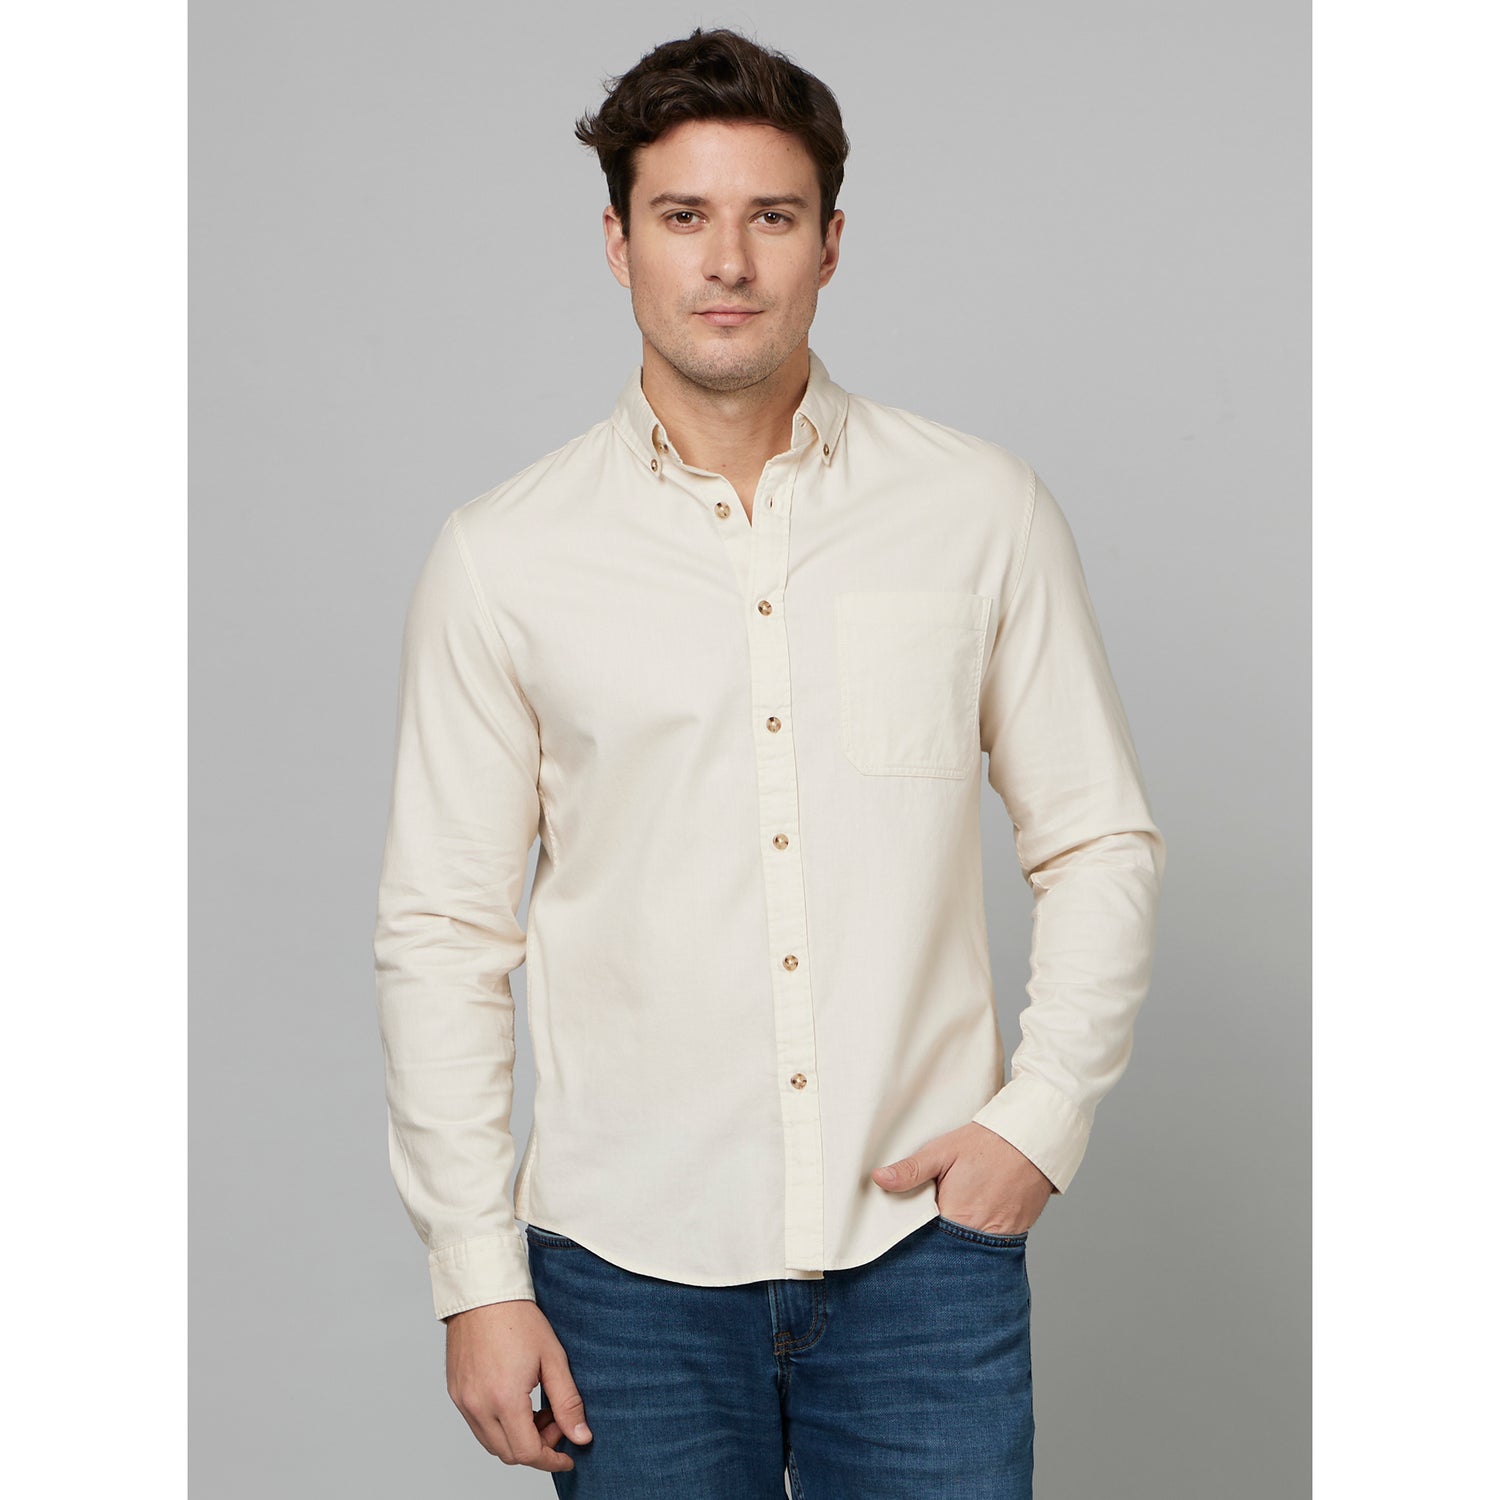 Beige Classic Spread Collar Cotton Casual Shirt (FAROBONE2)